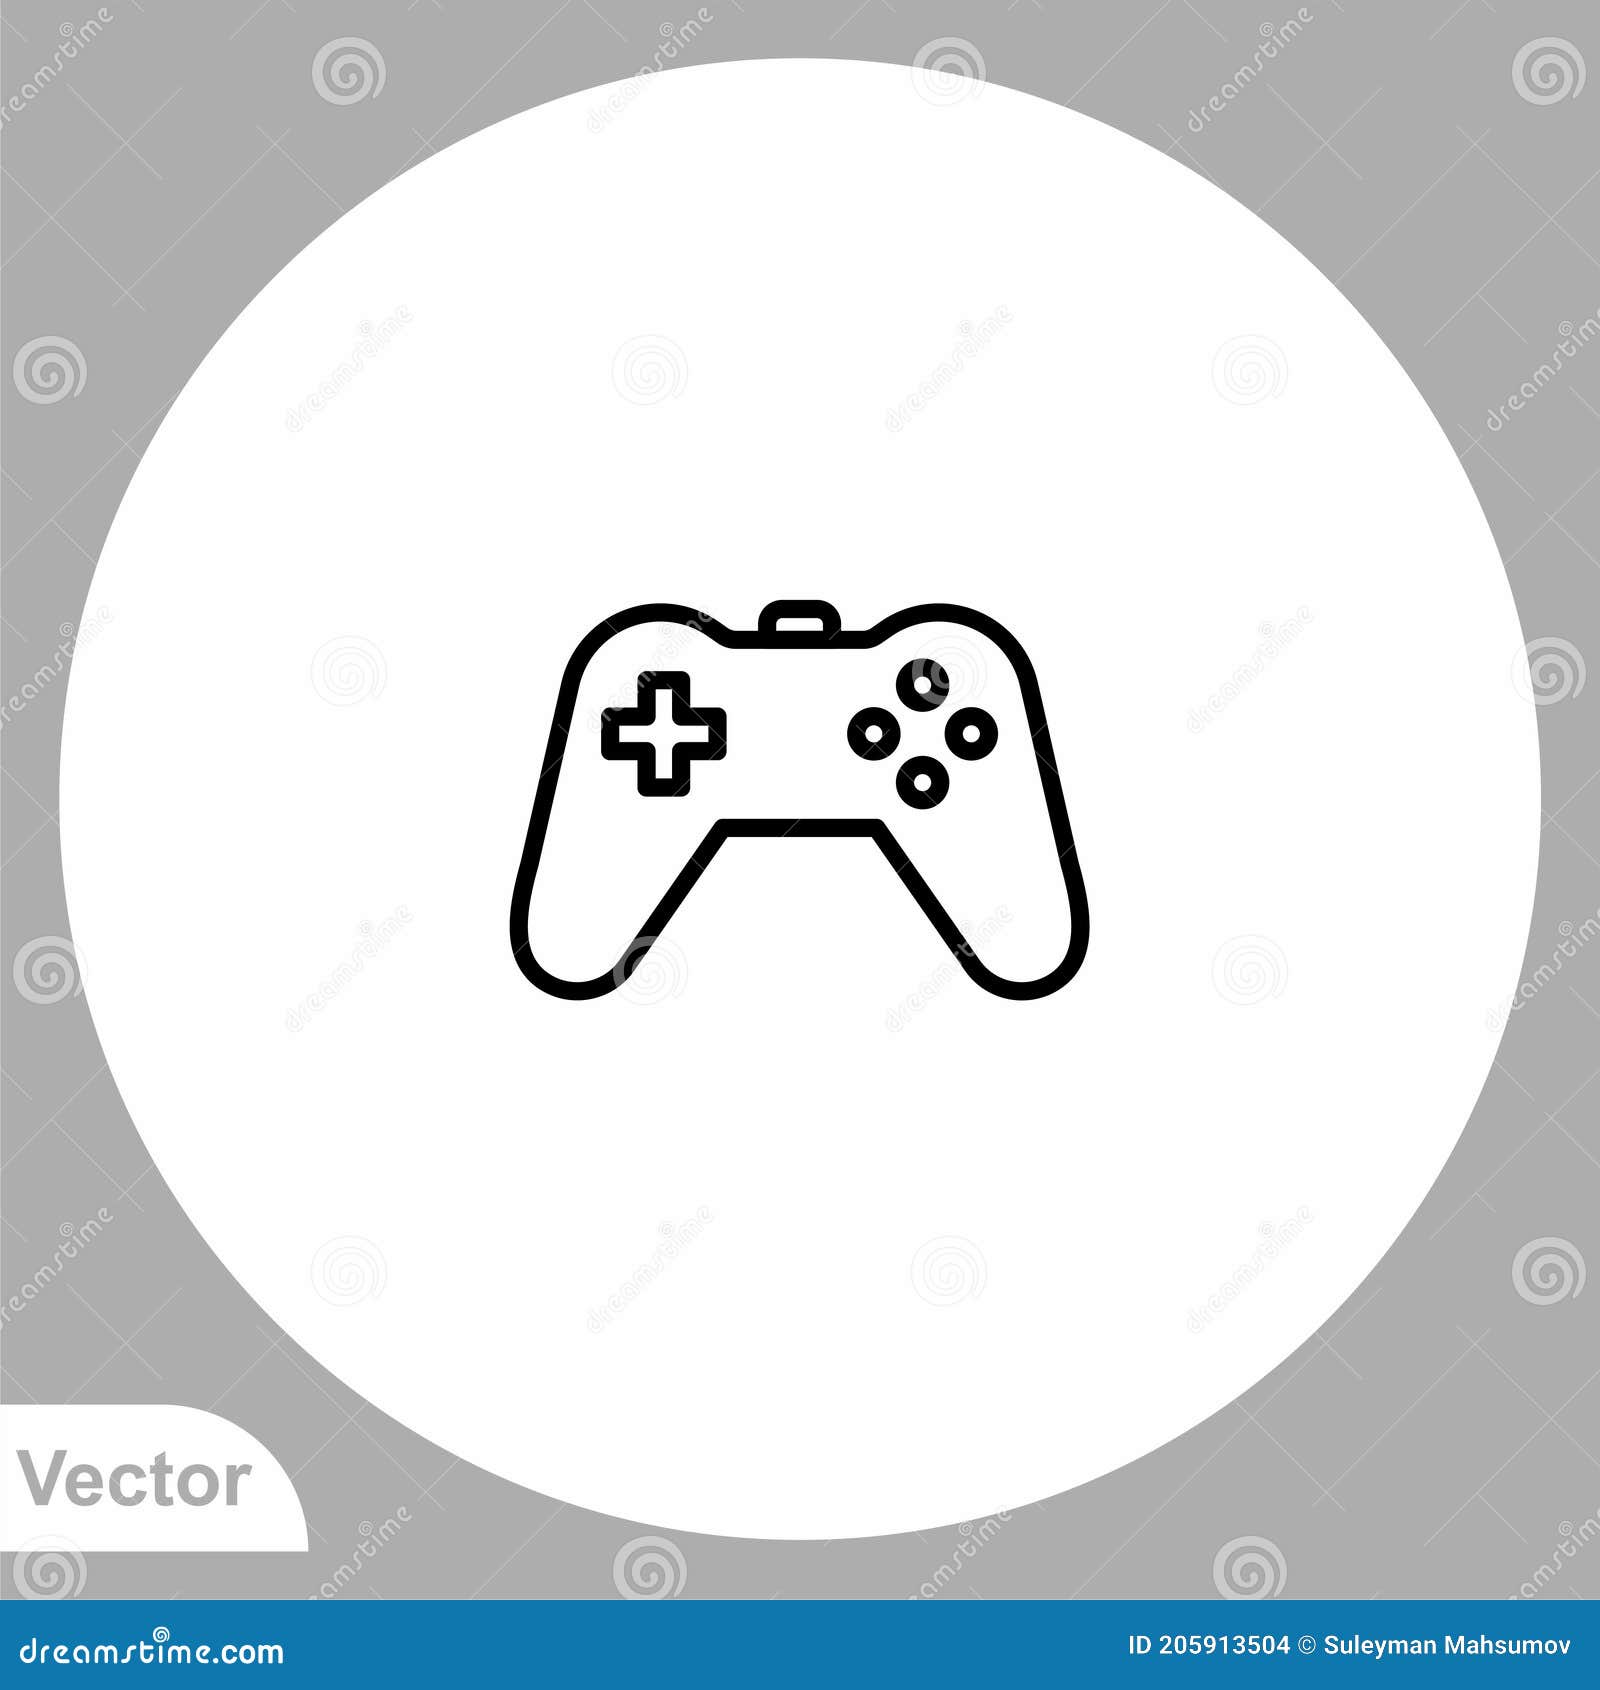 Vetor De Desenho De ícone De Controlador De Jogo PNG , Clipart Do  Controlador, ícones De Jogos, Jogos Imagem PNG e Vetor Para Download  Gratuito